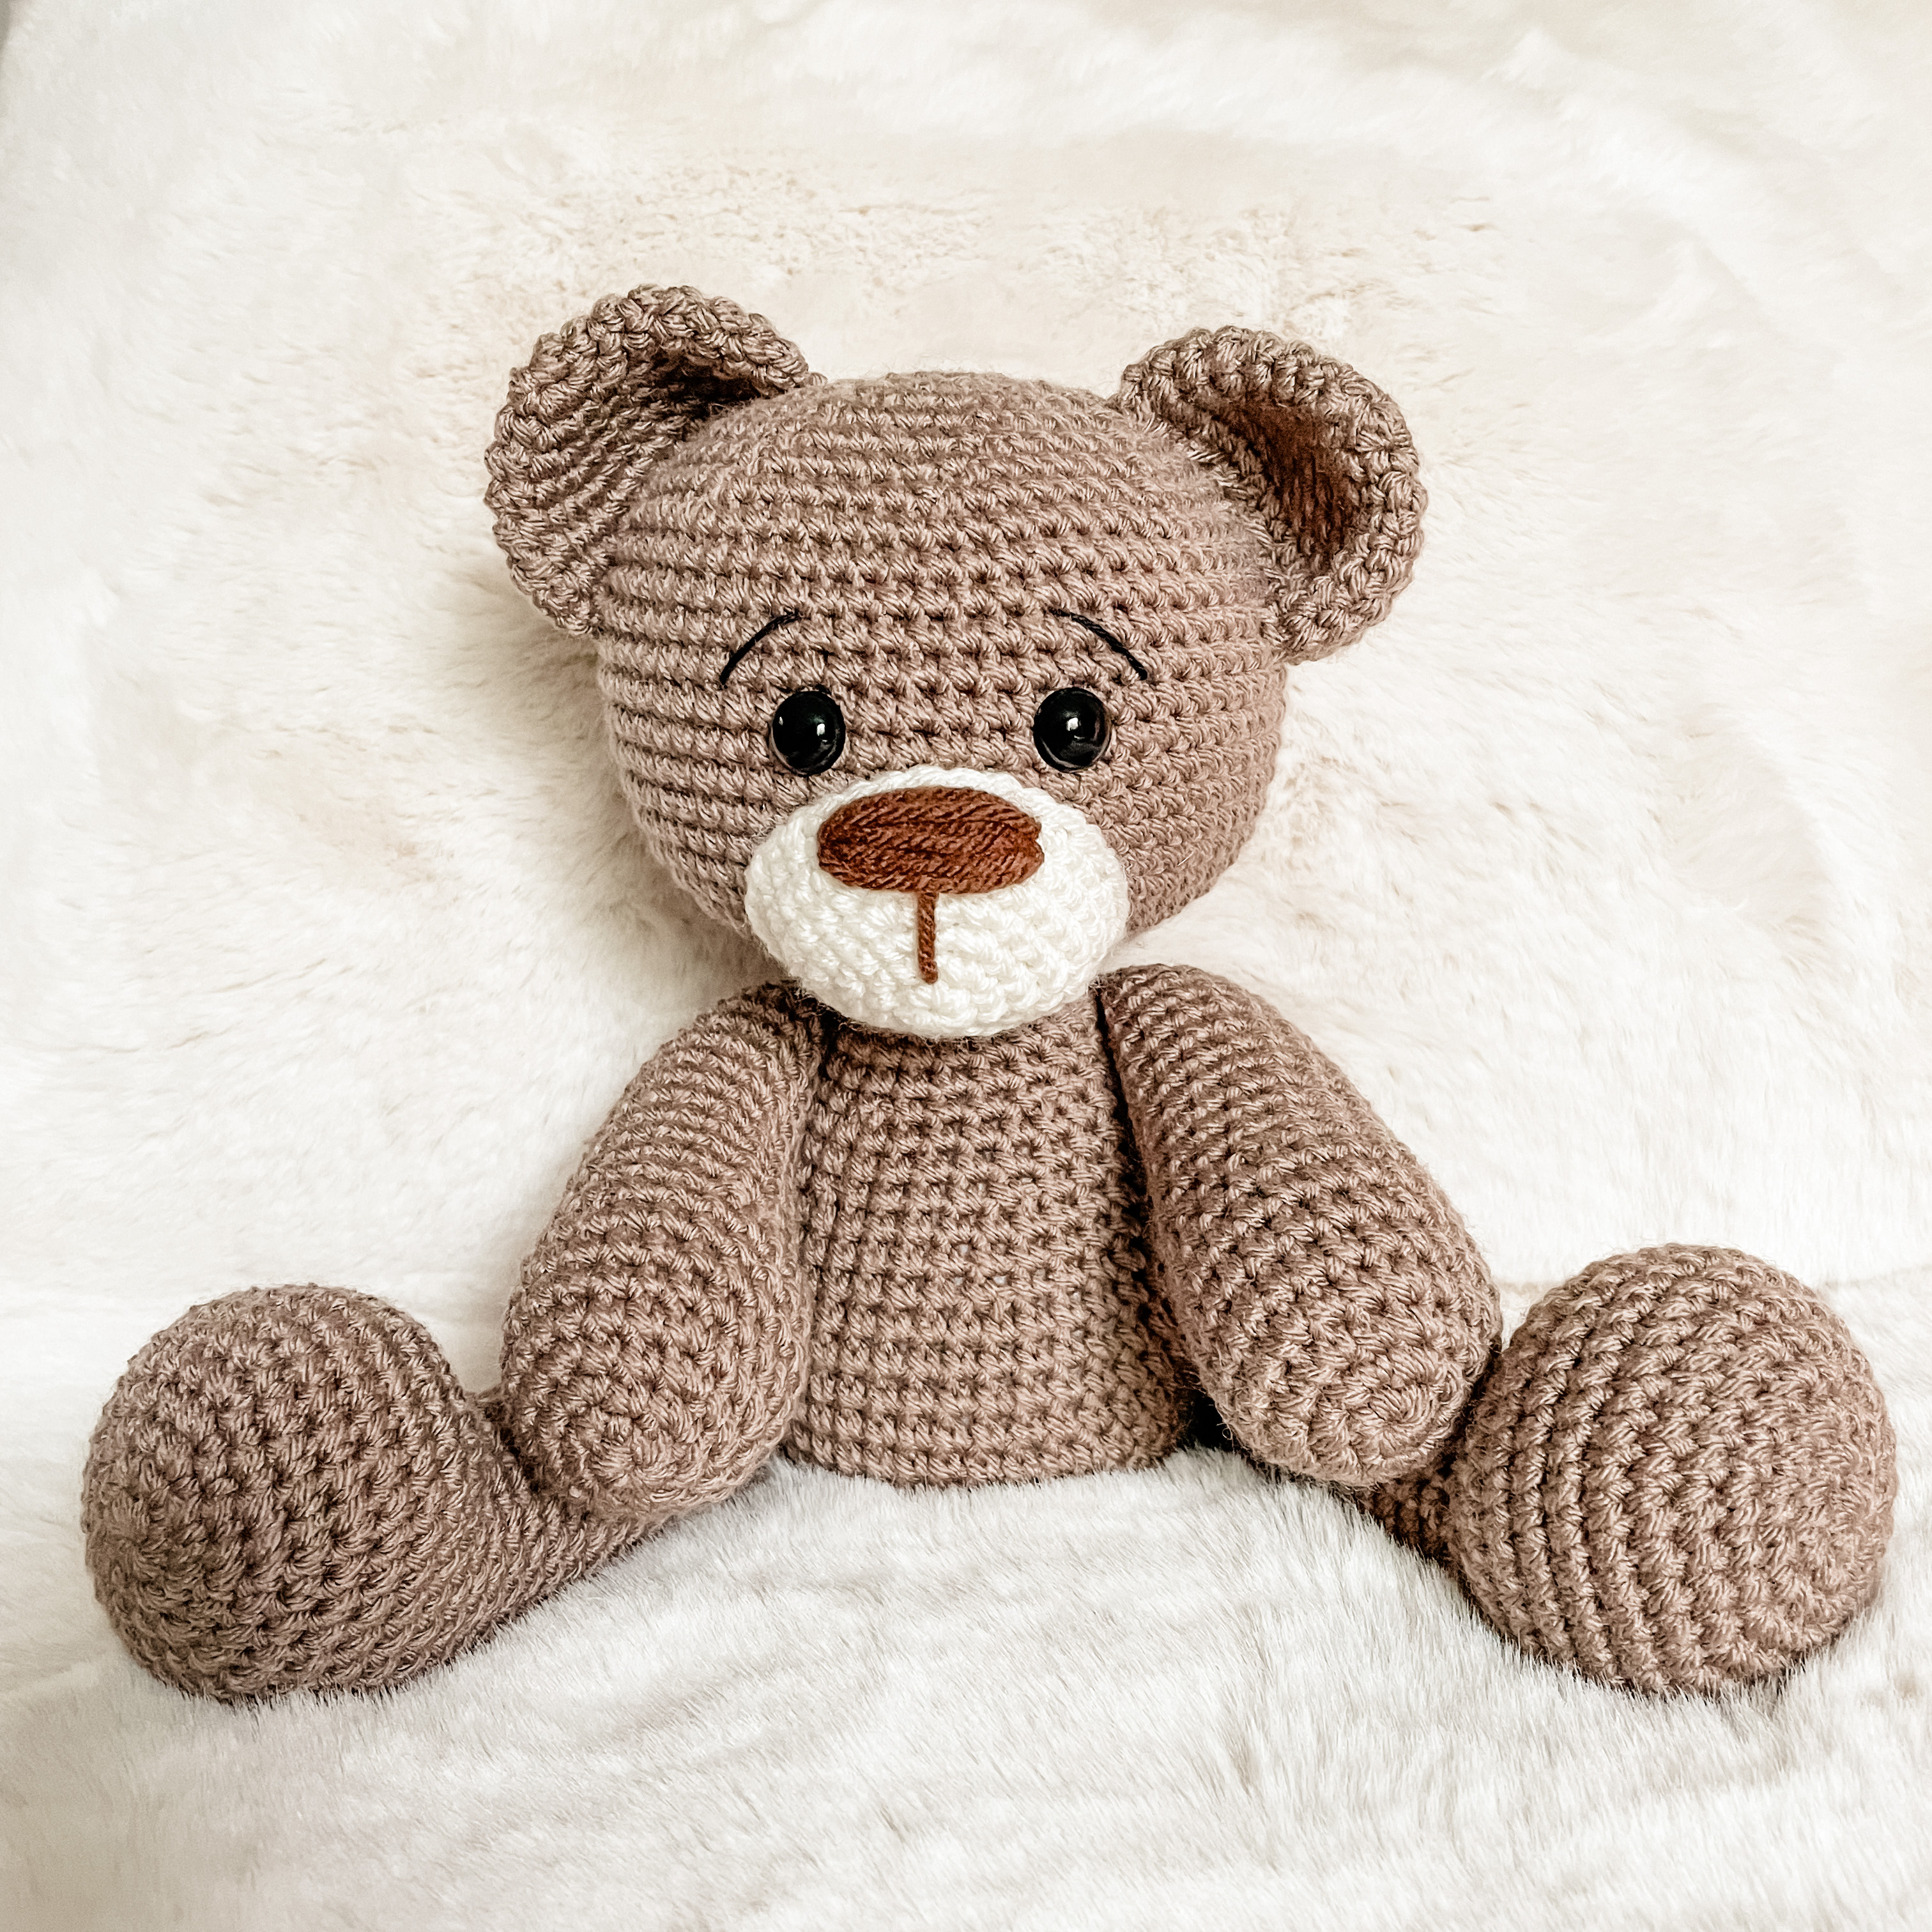 English pattern amigurumi pdf Stuffed animals crochet pattern Crochet pattern bear Amigurumi teddy bear pattern